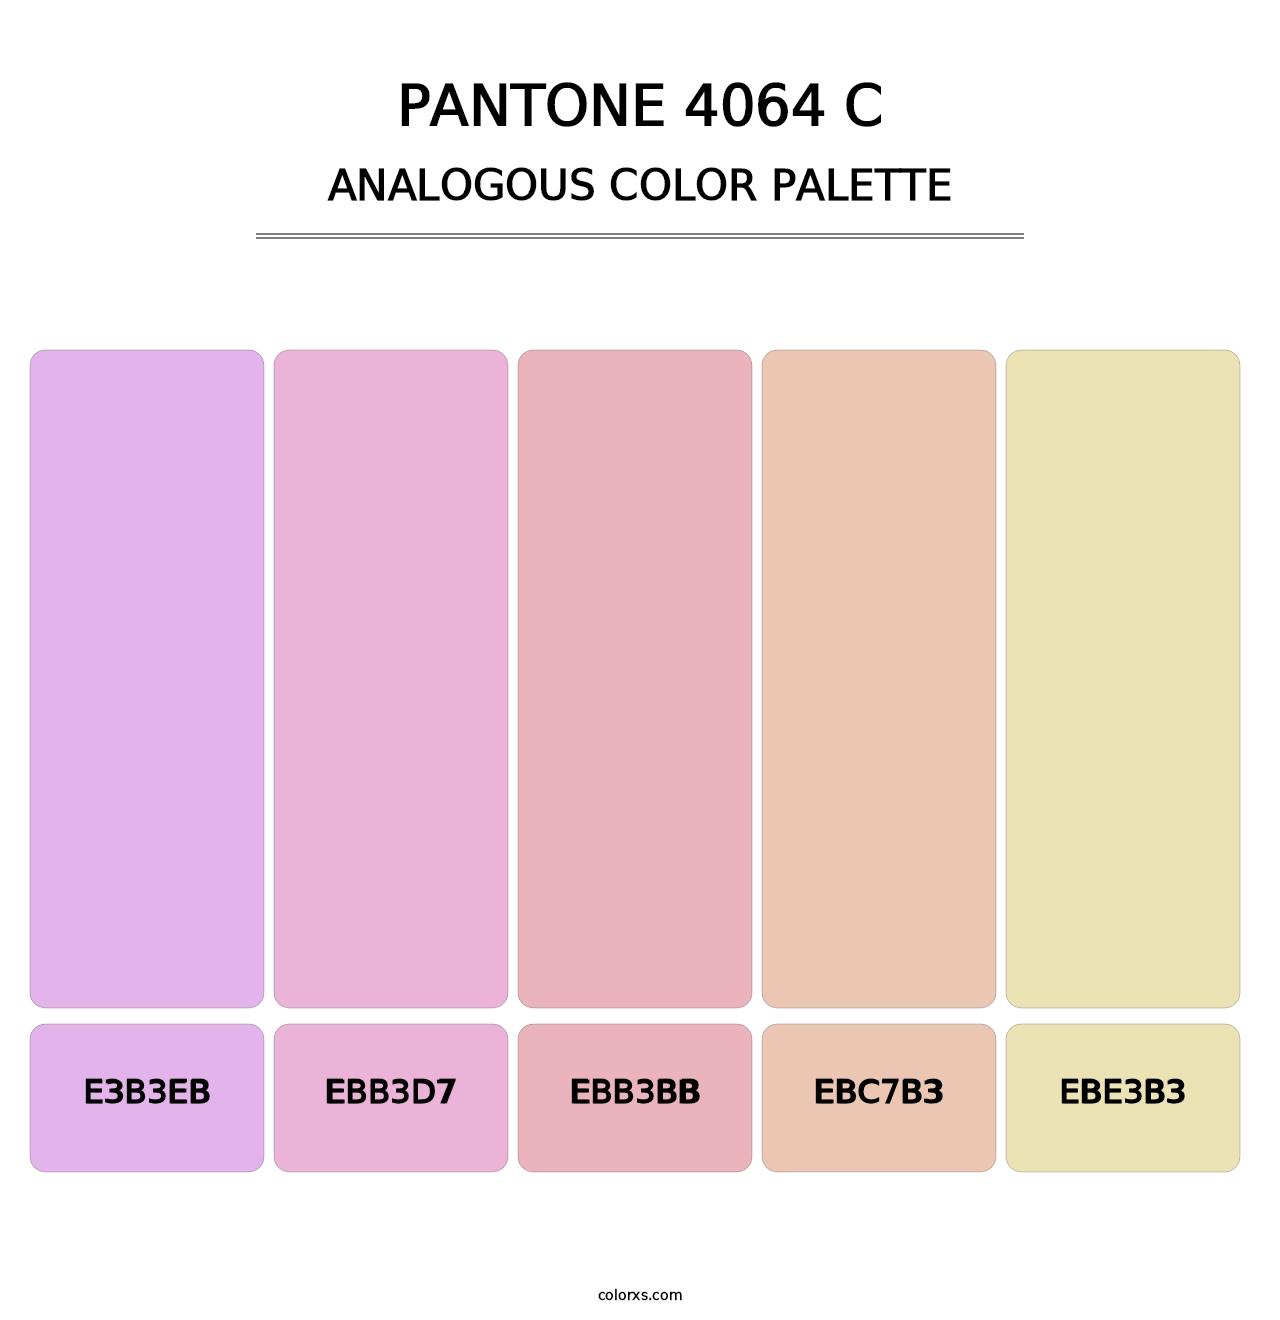 PANTONE 4064 C - Analogous Color Palette